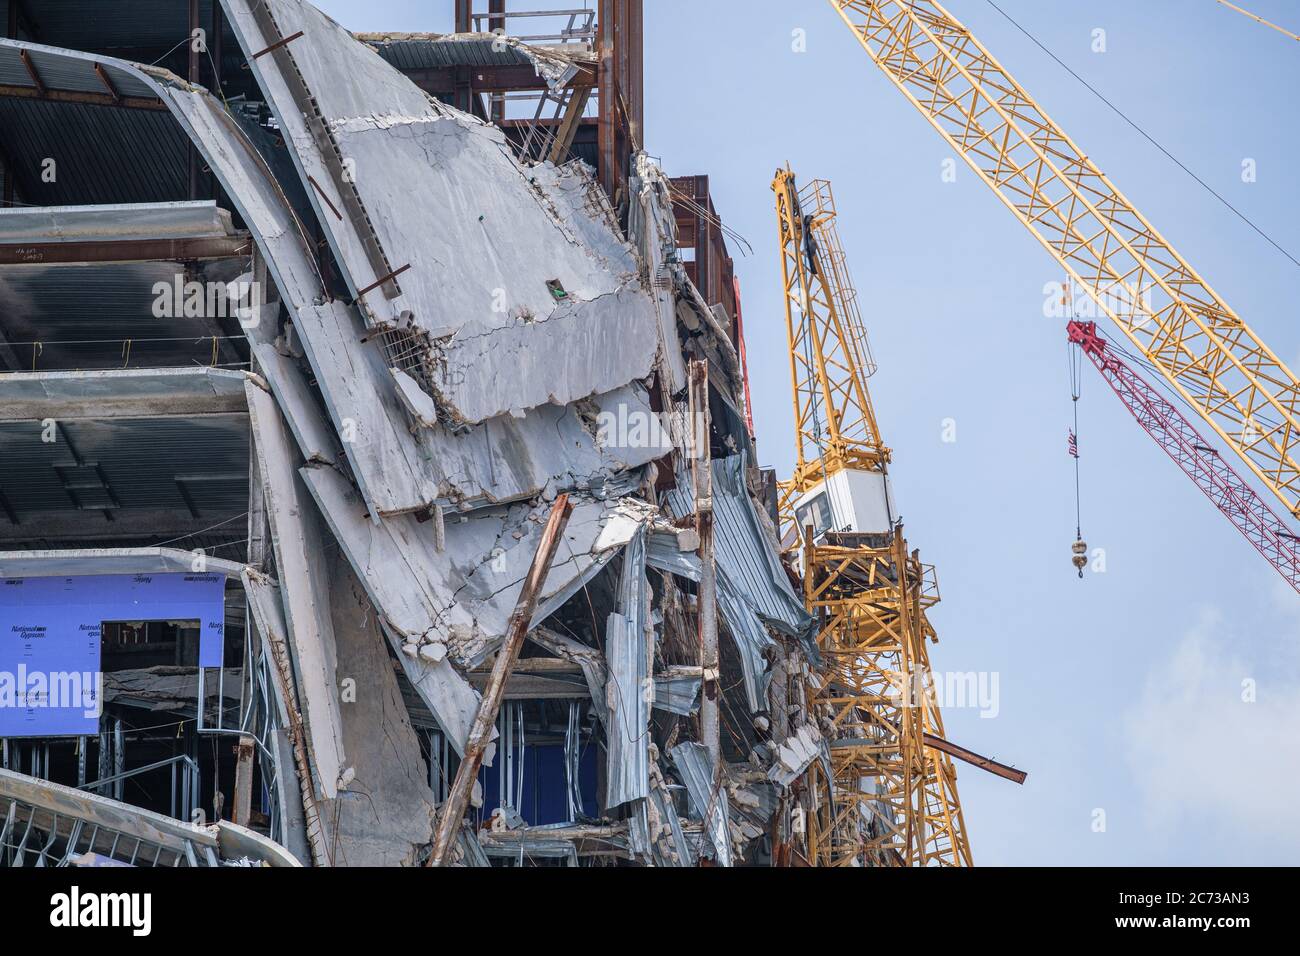 New Orleans, Louisiana/USA - 8. 7. 2020: Nahaufnahme des eingestürzten Hard Rock Hotels mit Kran, der sich auf den Abriss vorbereitet Stockfoto